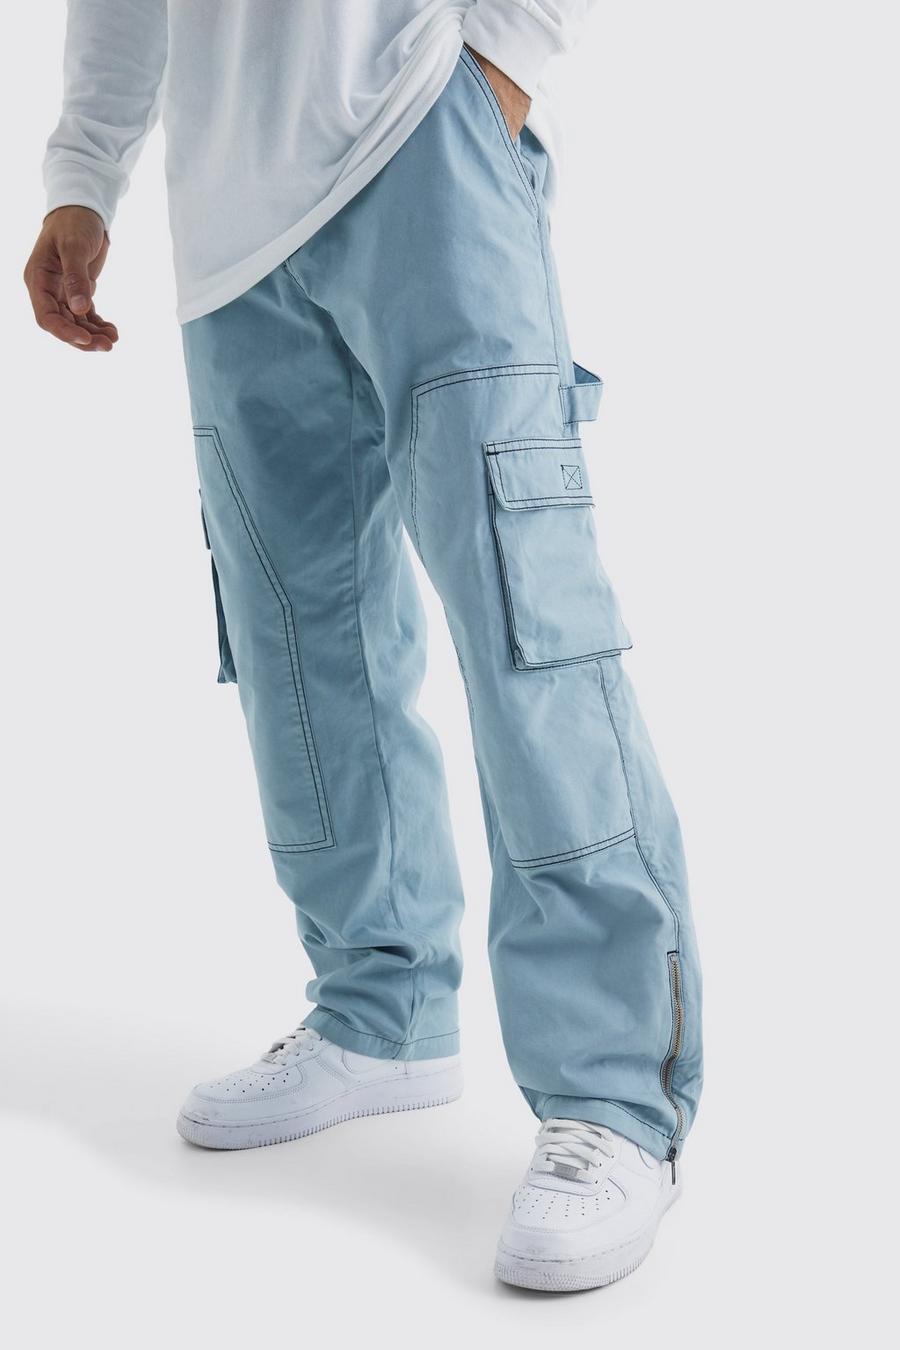 Pantaloni rilassati stile Carpenter con cuciture a contrasto e zip sul fondo, Slate